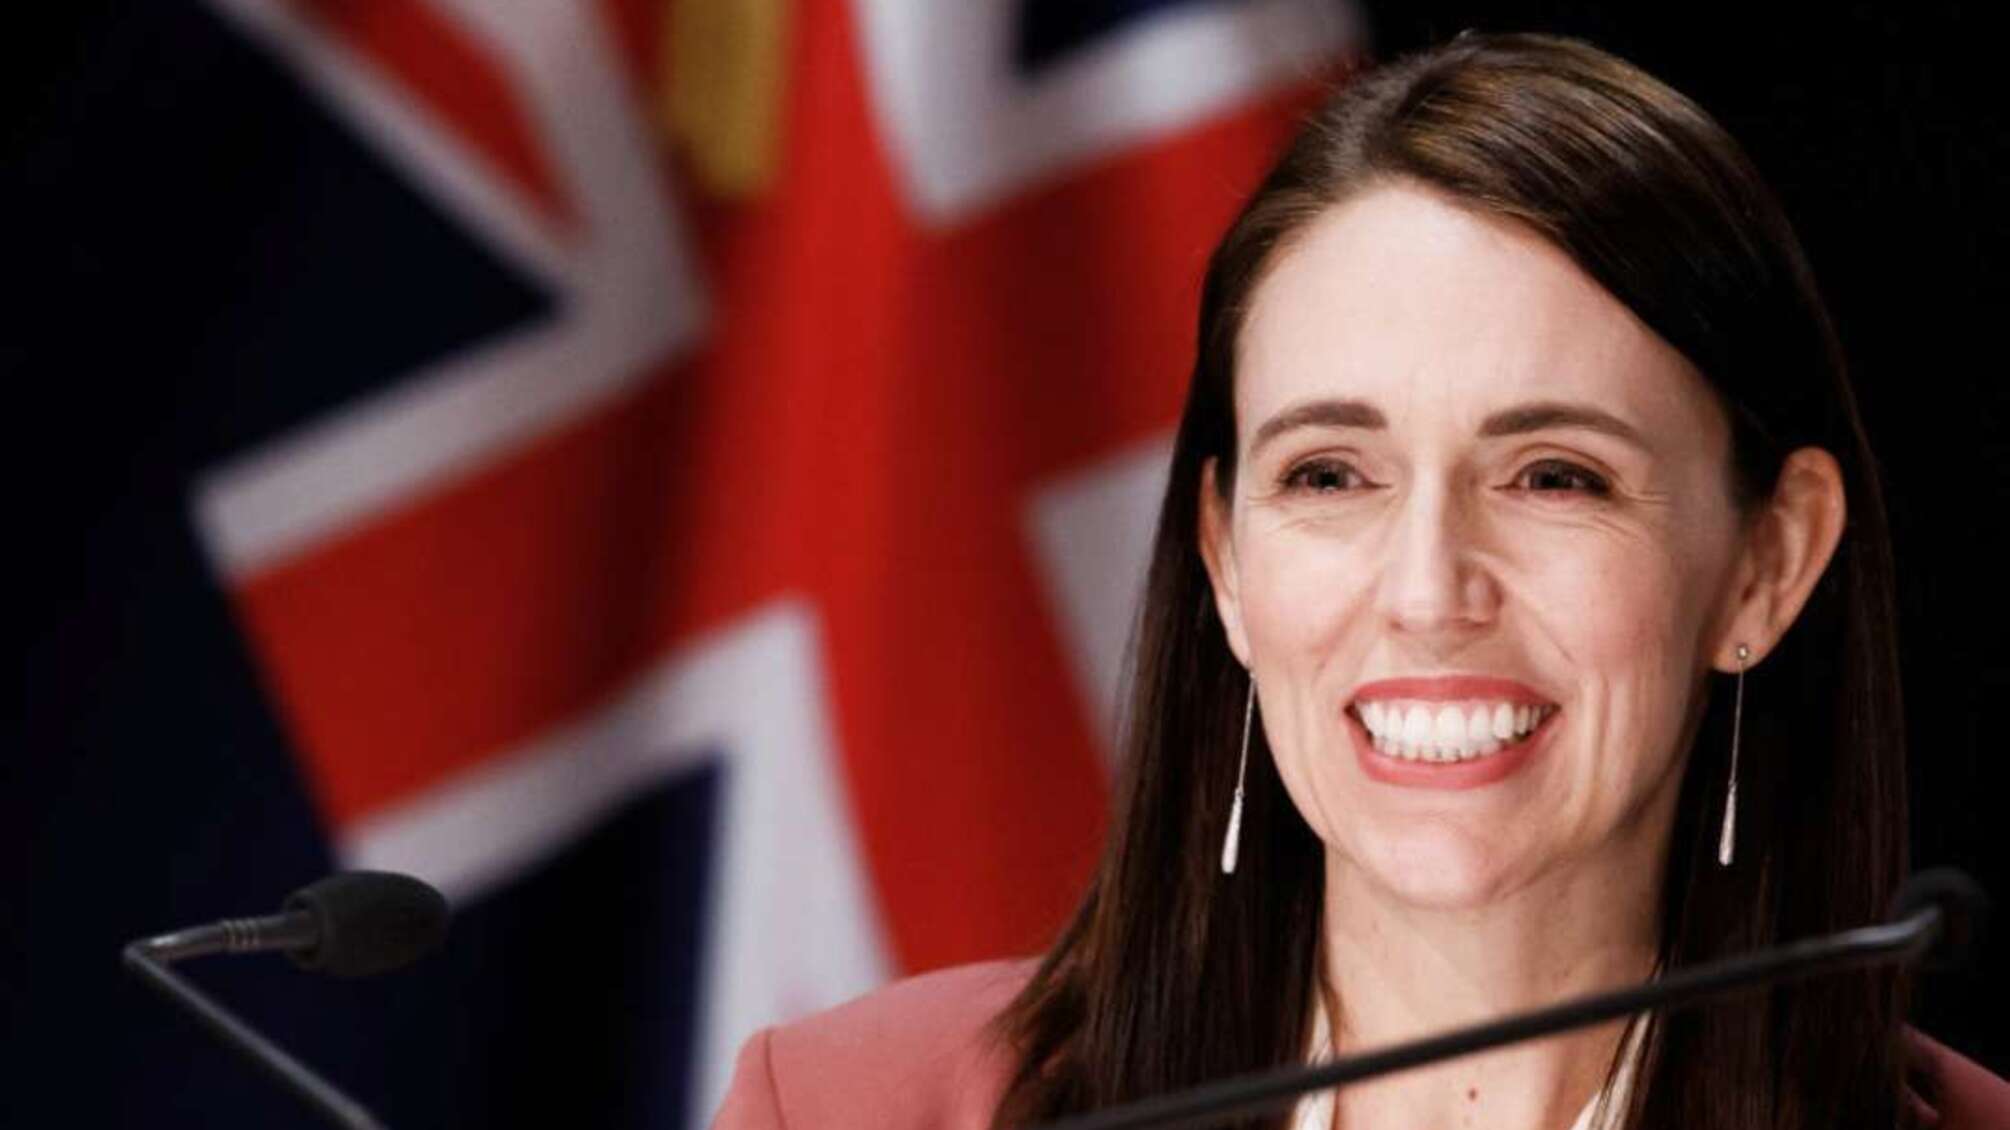 Прем'єр Нової Зеландії під час своєї промови запропонувала хлопцеві одружитися (відео)